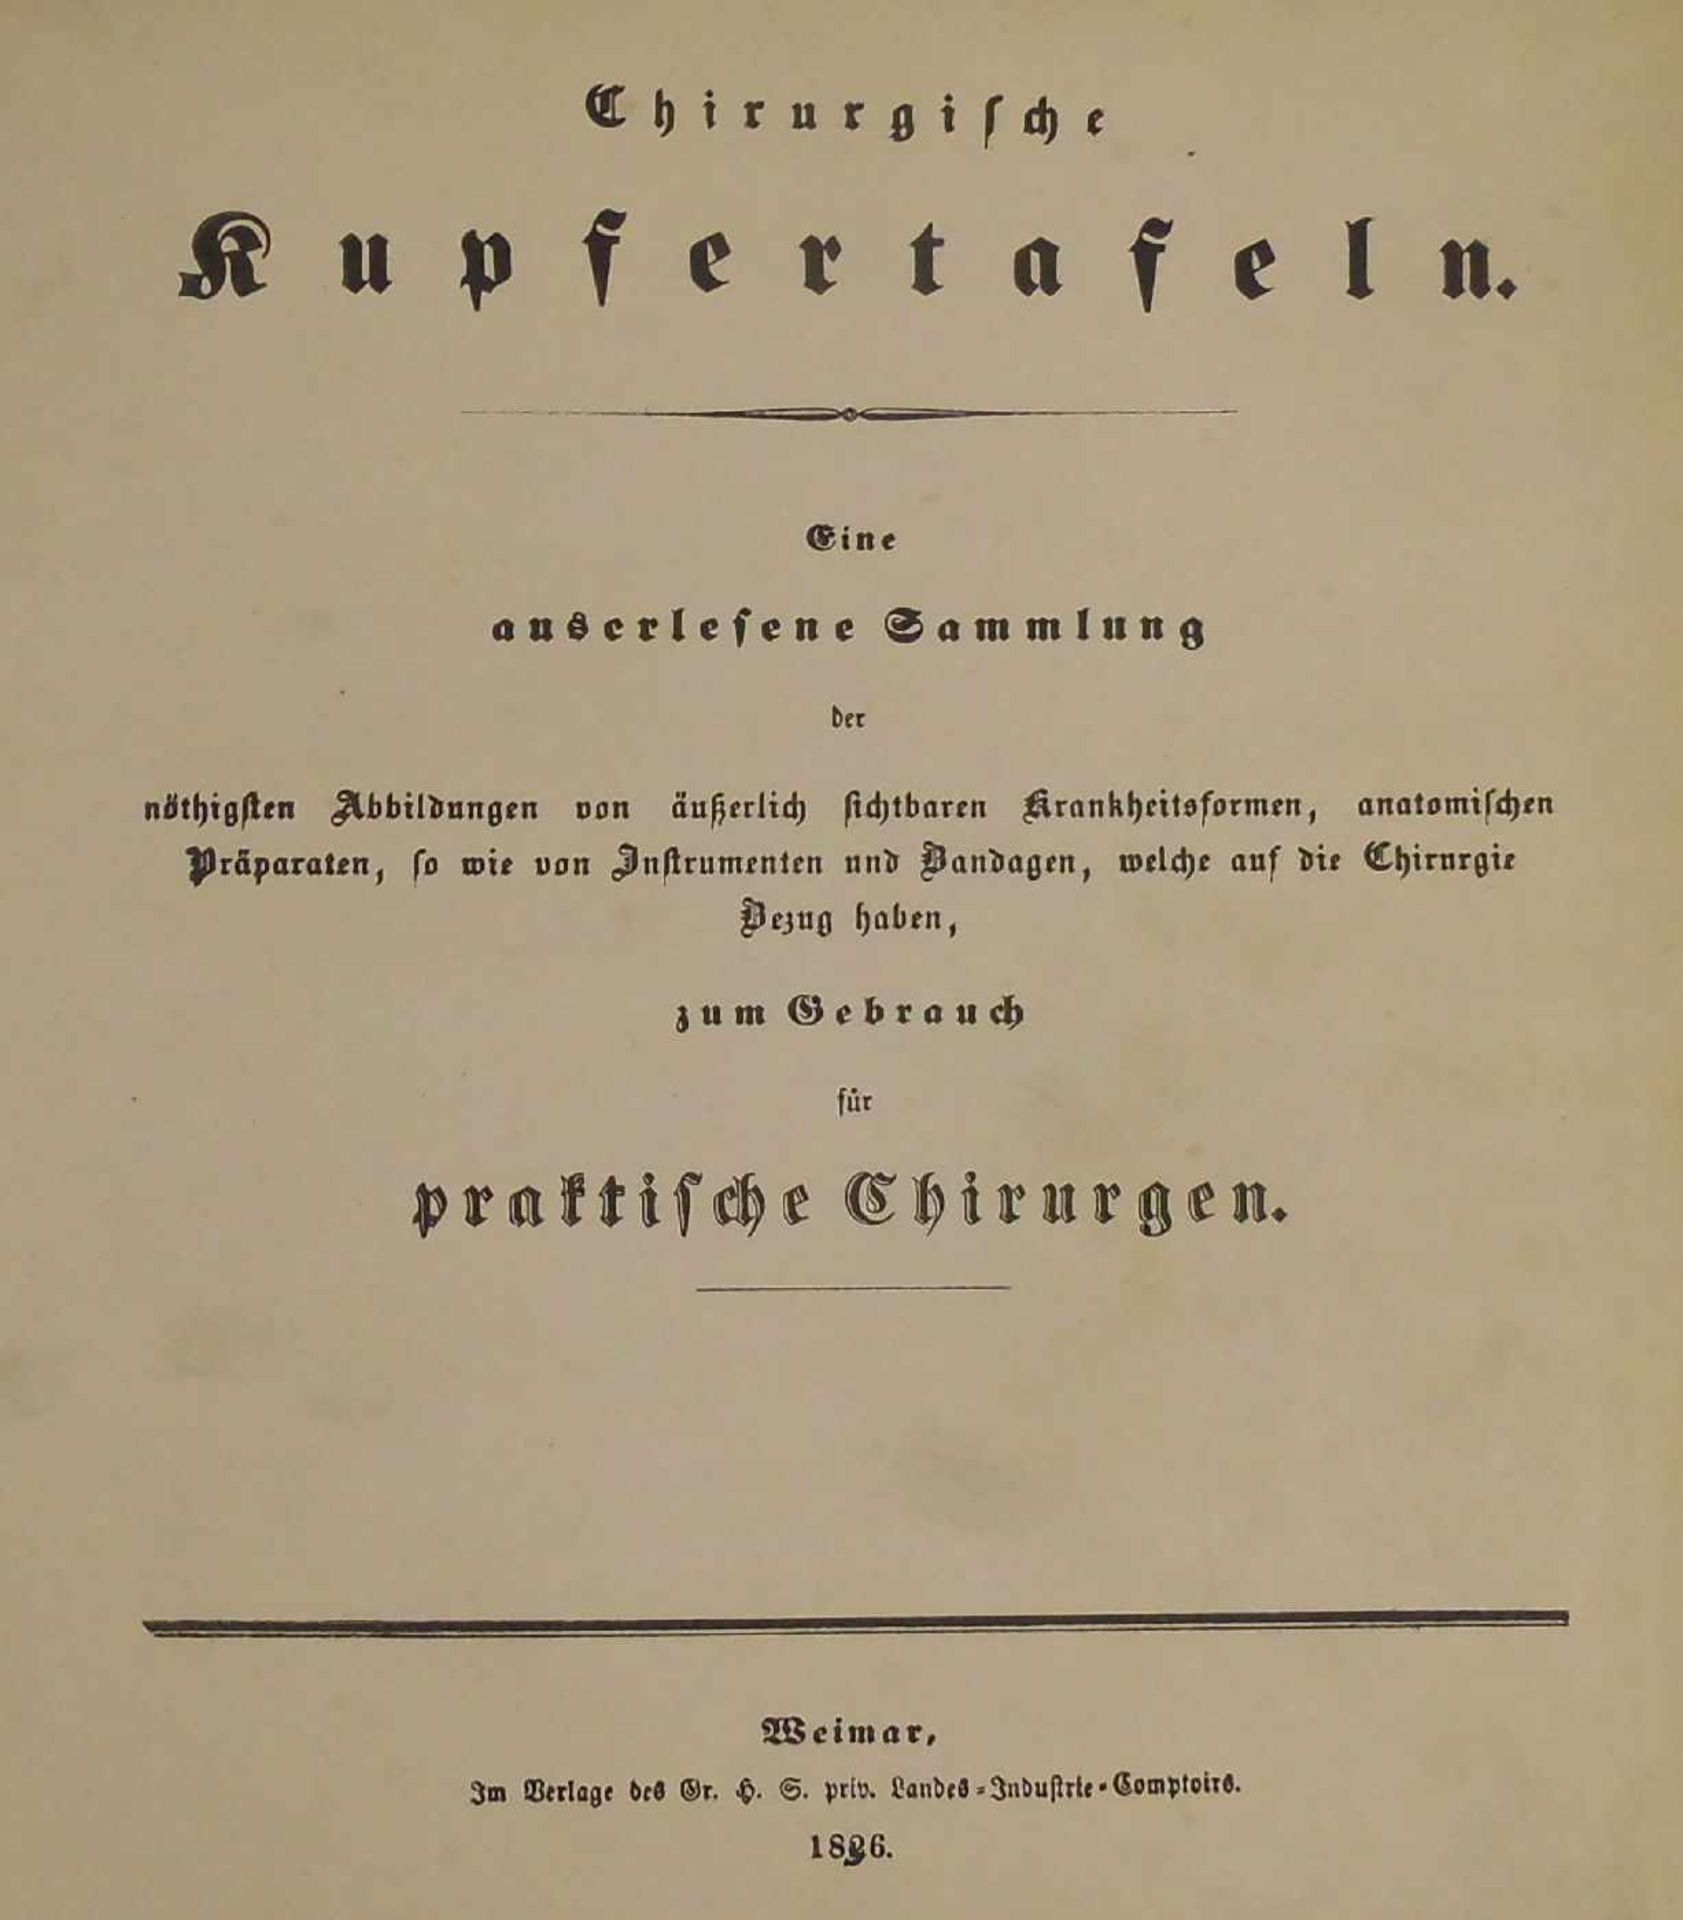 MEDIZINISCHES LEHRBUCH VON 1826 MIT CHIRURGISCHEN KUPFERTAFELN / medical book: "Chirurgische